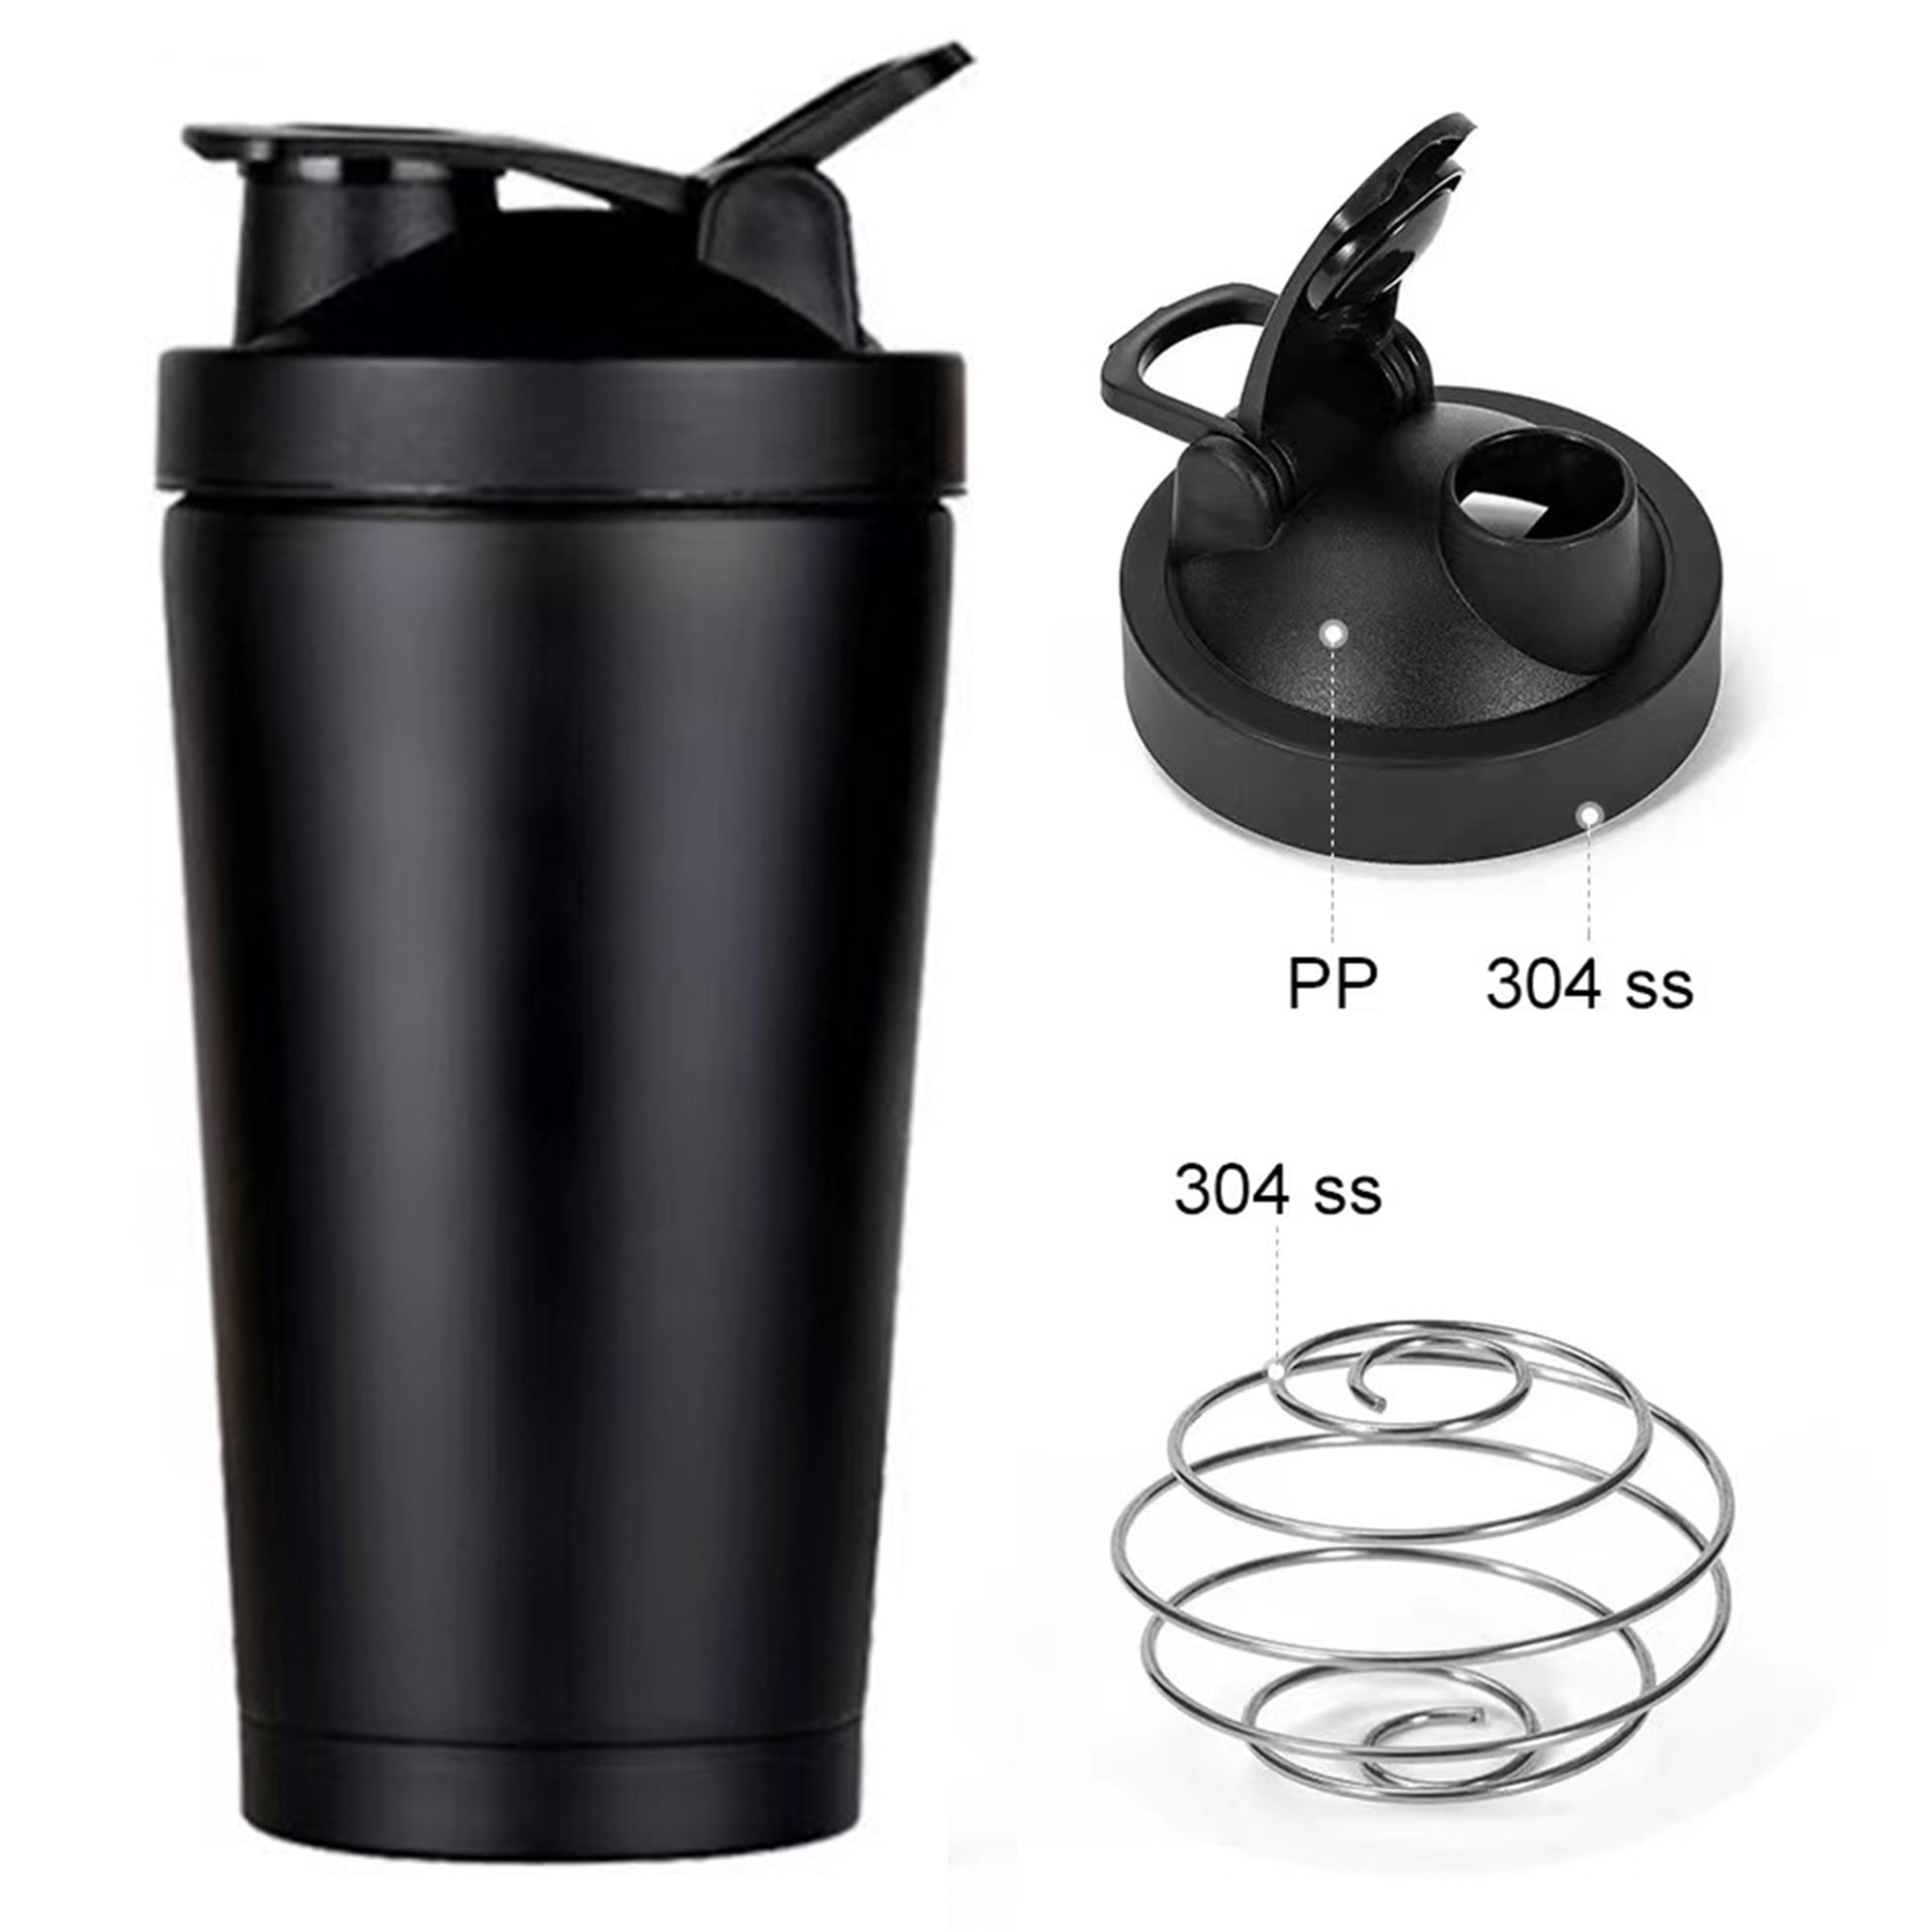 CUSTOM - PLUS Shaker Cup, 24oz (710mL) - NO SETUP FEES - BLACK